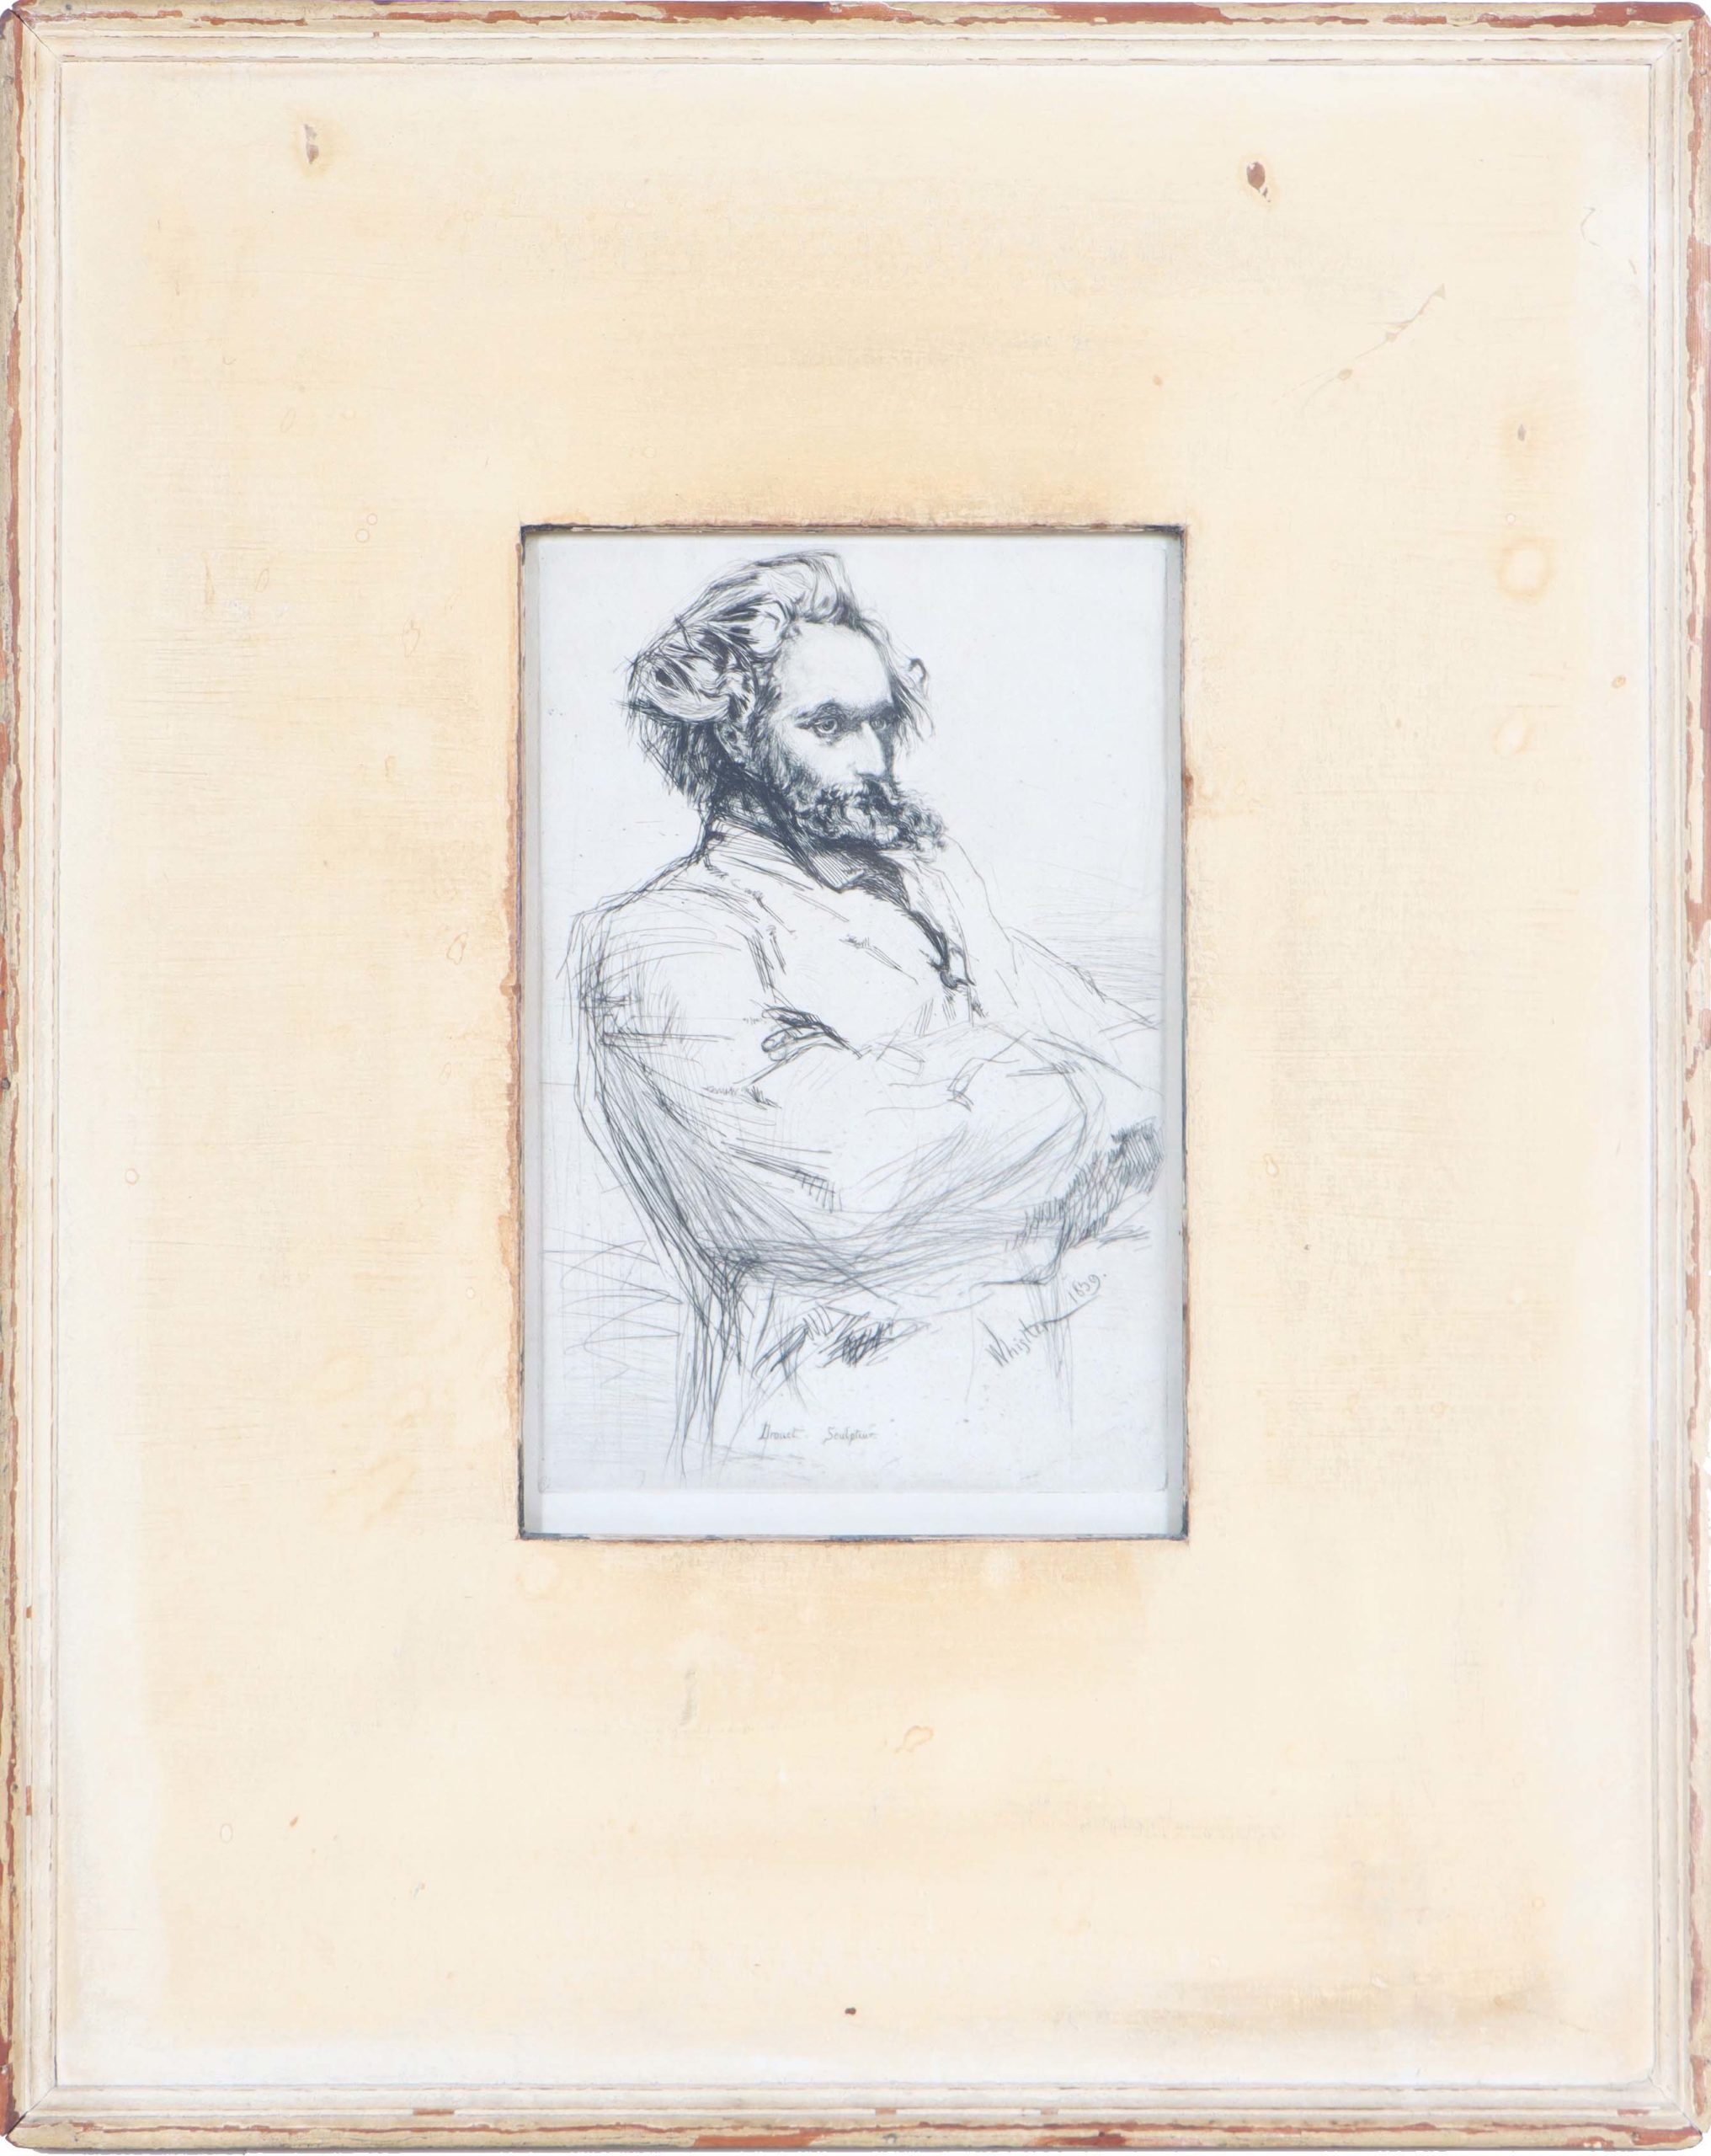 James Abbott McNeill Whistler (1834-1903) American - Etching _Drouet Sculpteur_ 1859